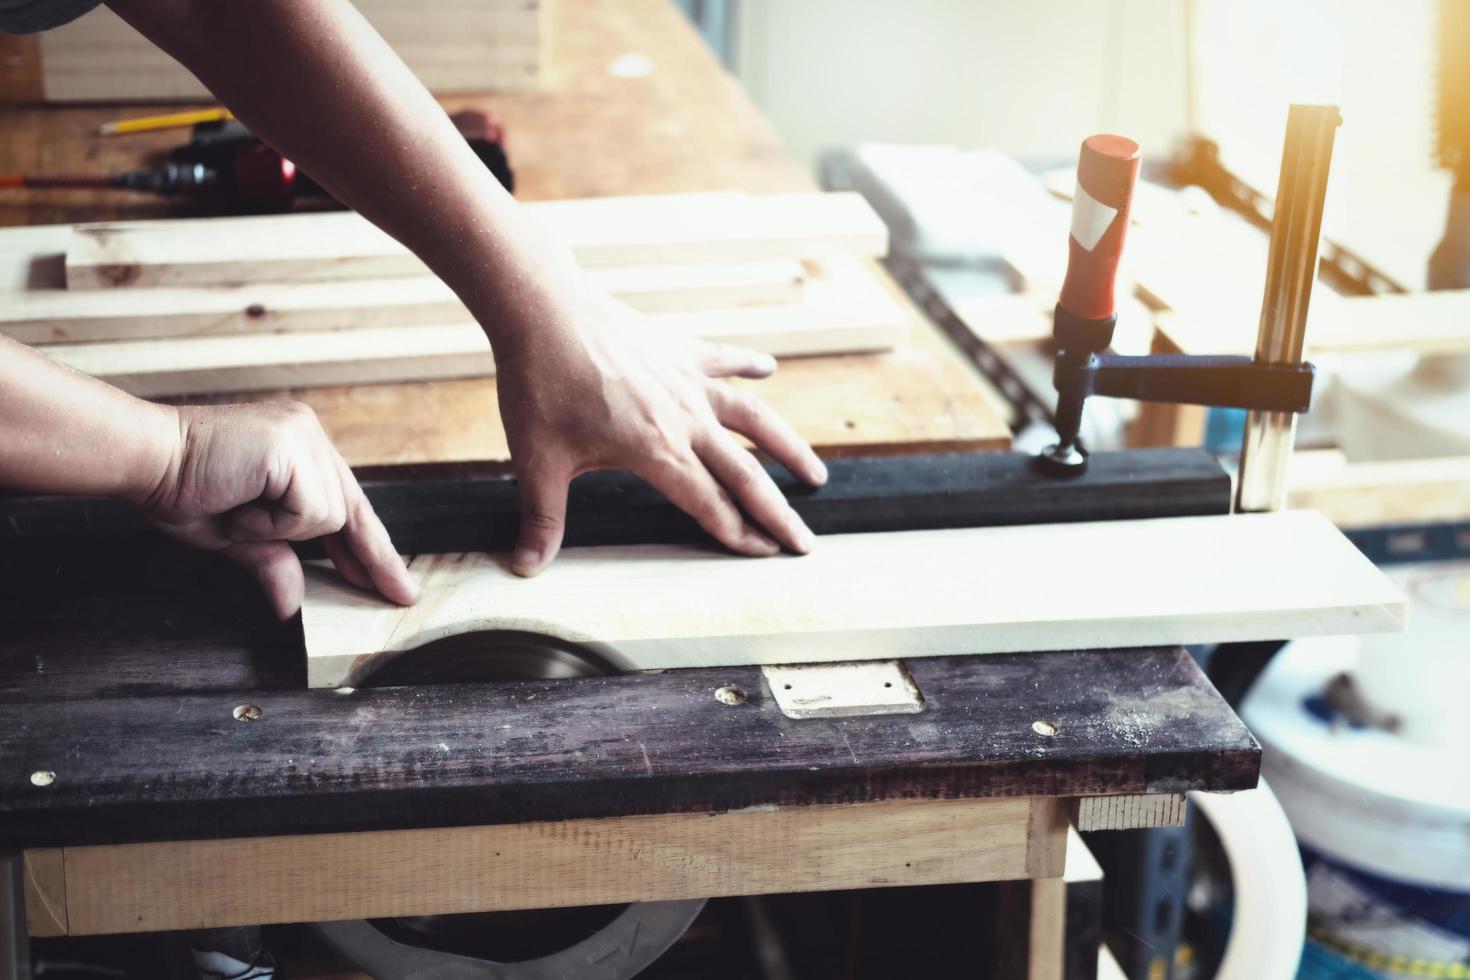 houtbewerkers gebruiken zaagbladen om stukken hout te zagen om houten tafels te monteren en te bouwen voor hun klanten. foto